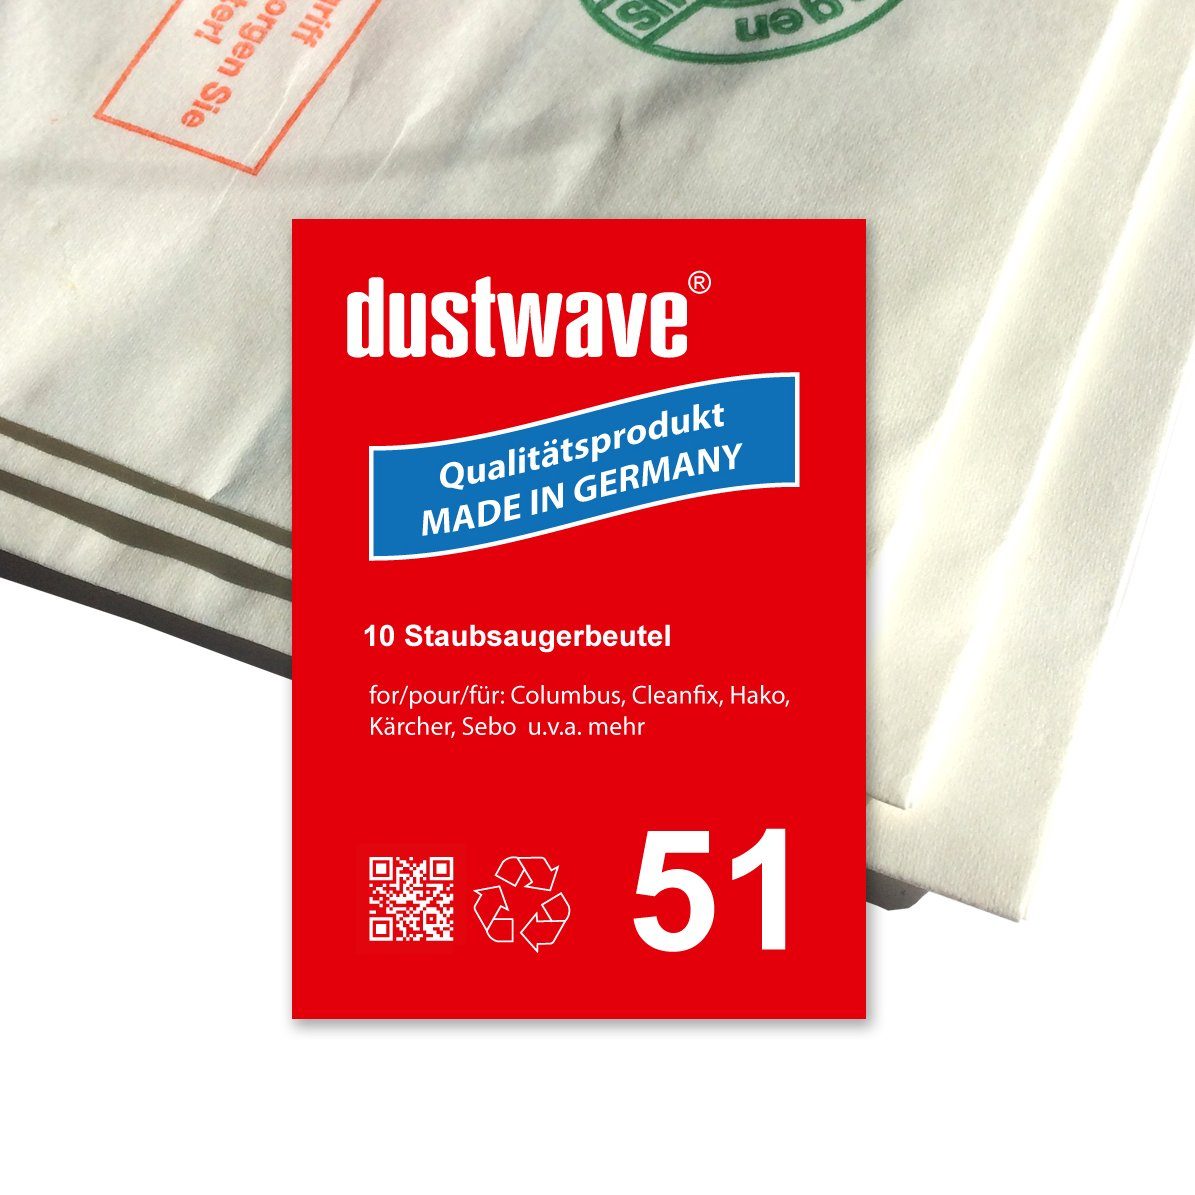 Dustwave Staubsaugerbeutel Sparpack, passend für Columbus 26, 5 St., Sparpack, 5 Staubsaugerbeutel + 1 Hepa-Filter (ca. 15x15cm - zuschneidbar)